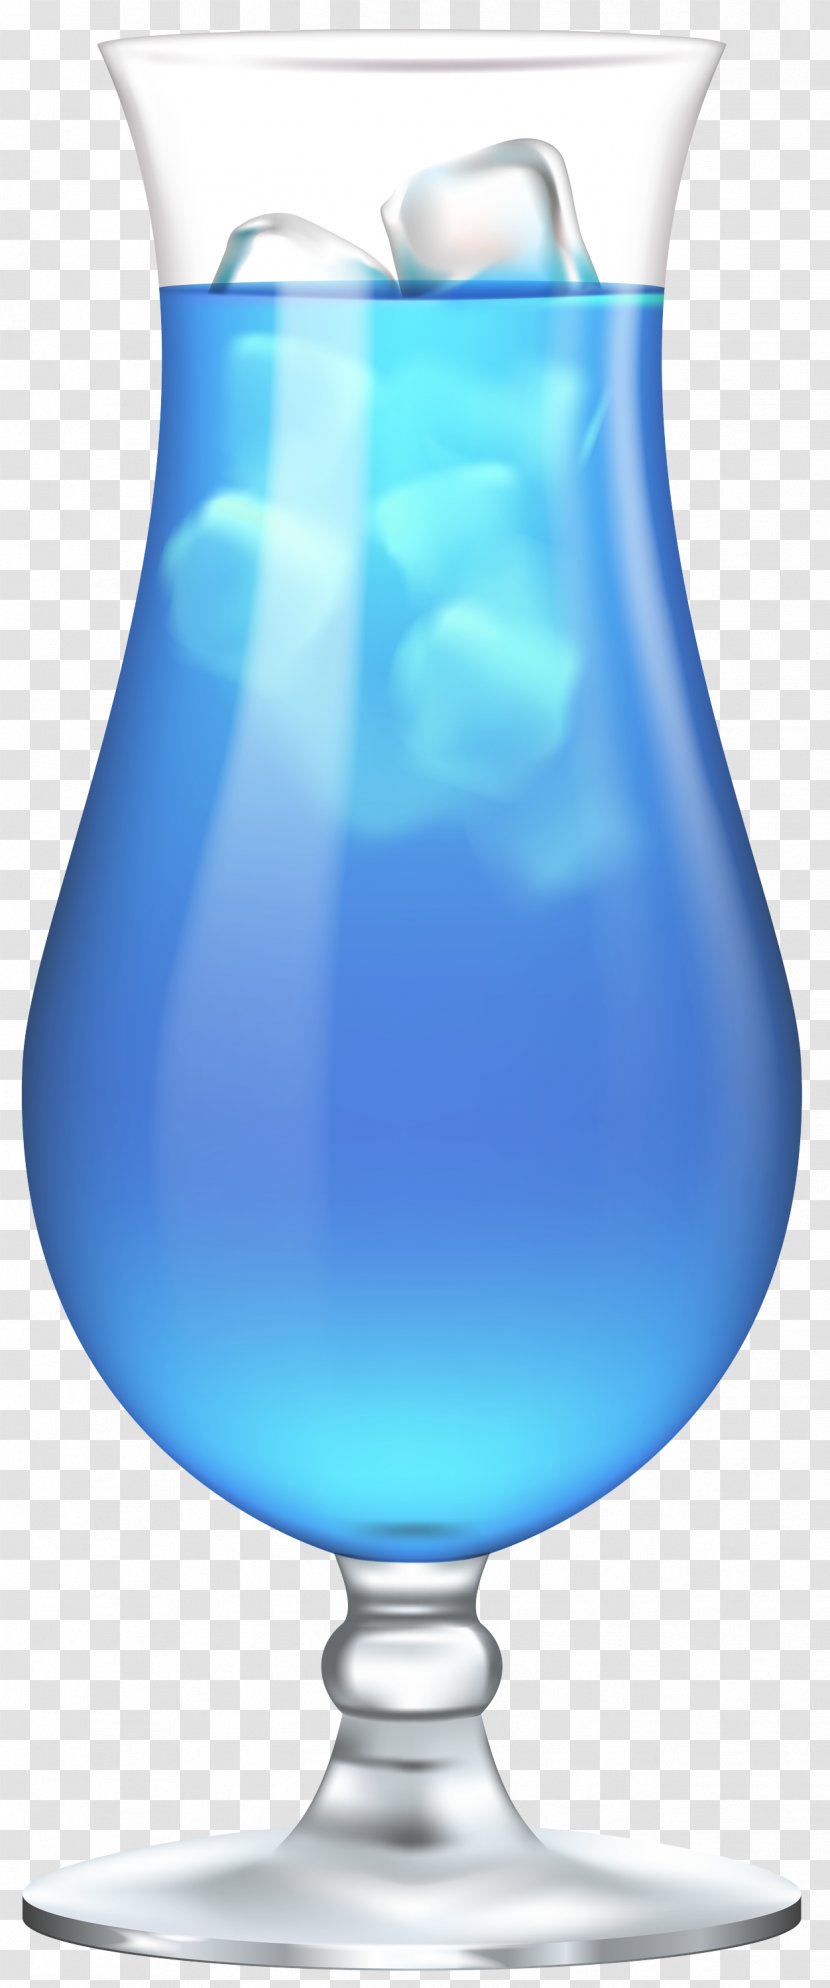 Blue Aqua Hawaii Hpnotiq Drink - Drinkware Lagoon Transparent PNG